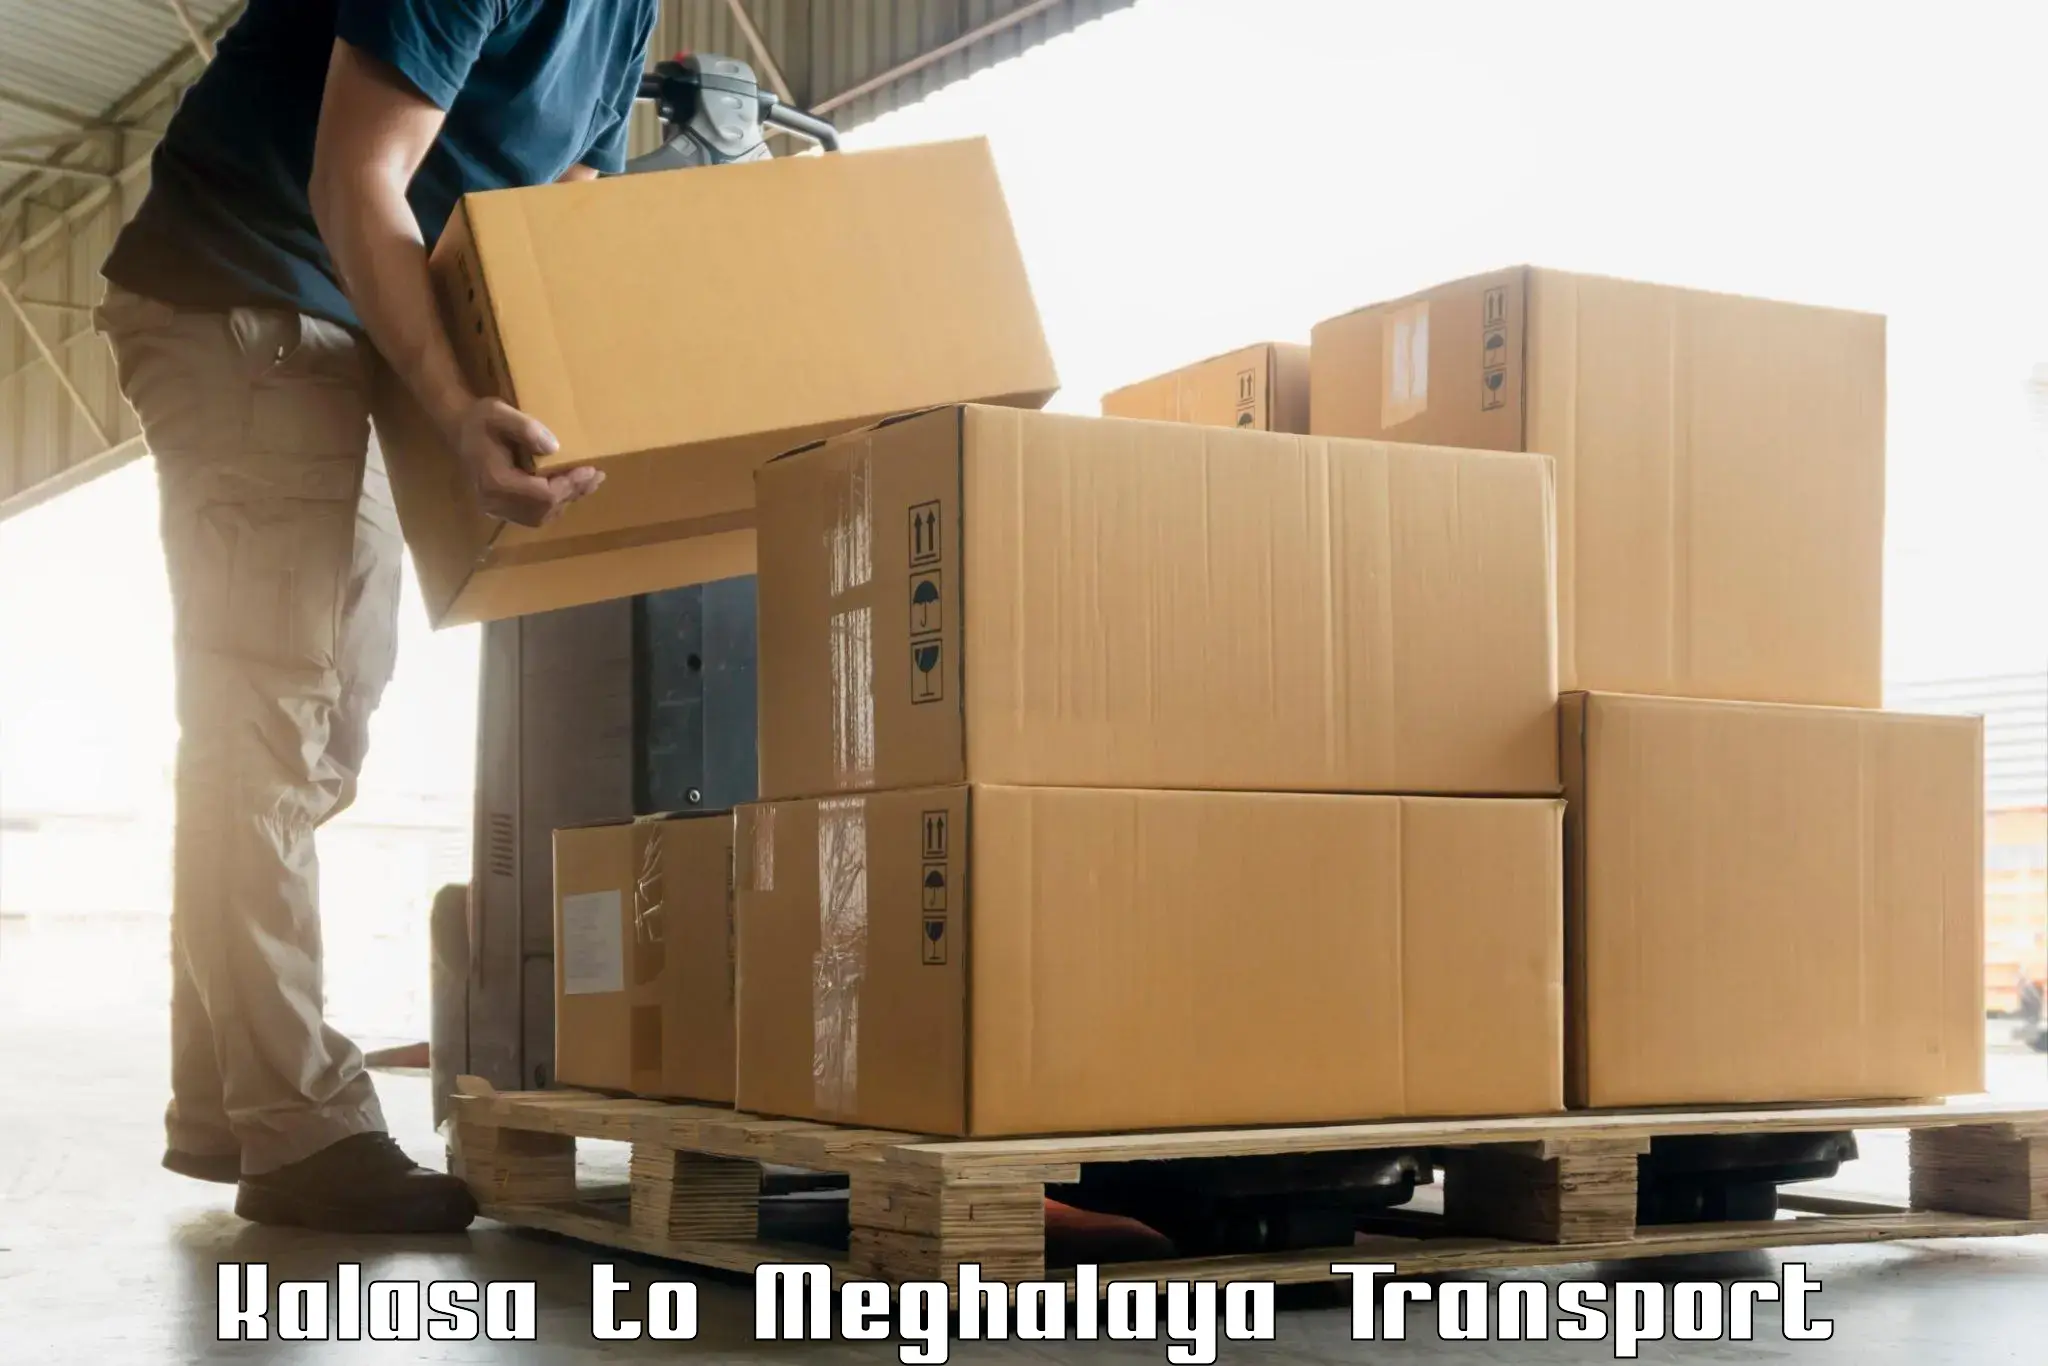 Air freight transport services Kalasa to Meghalaya